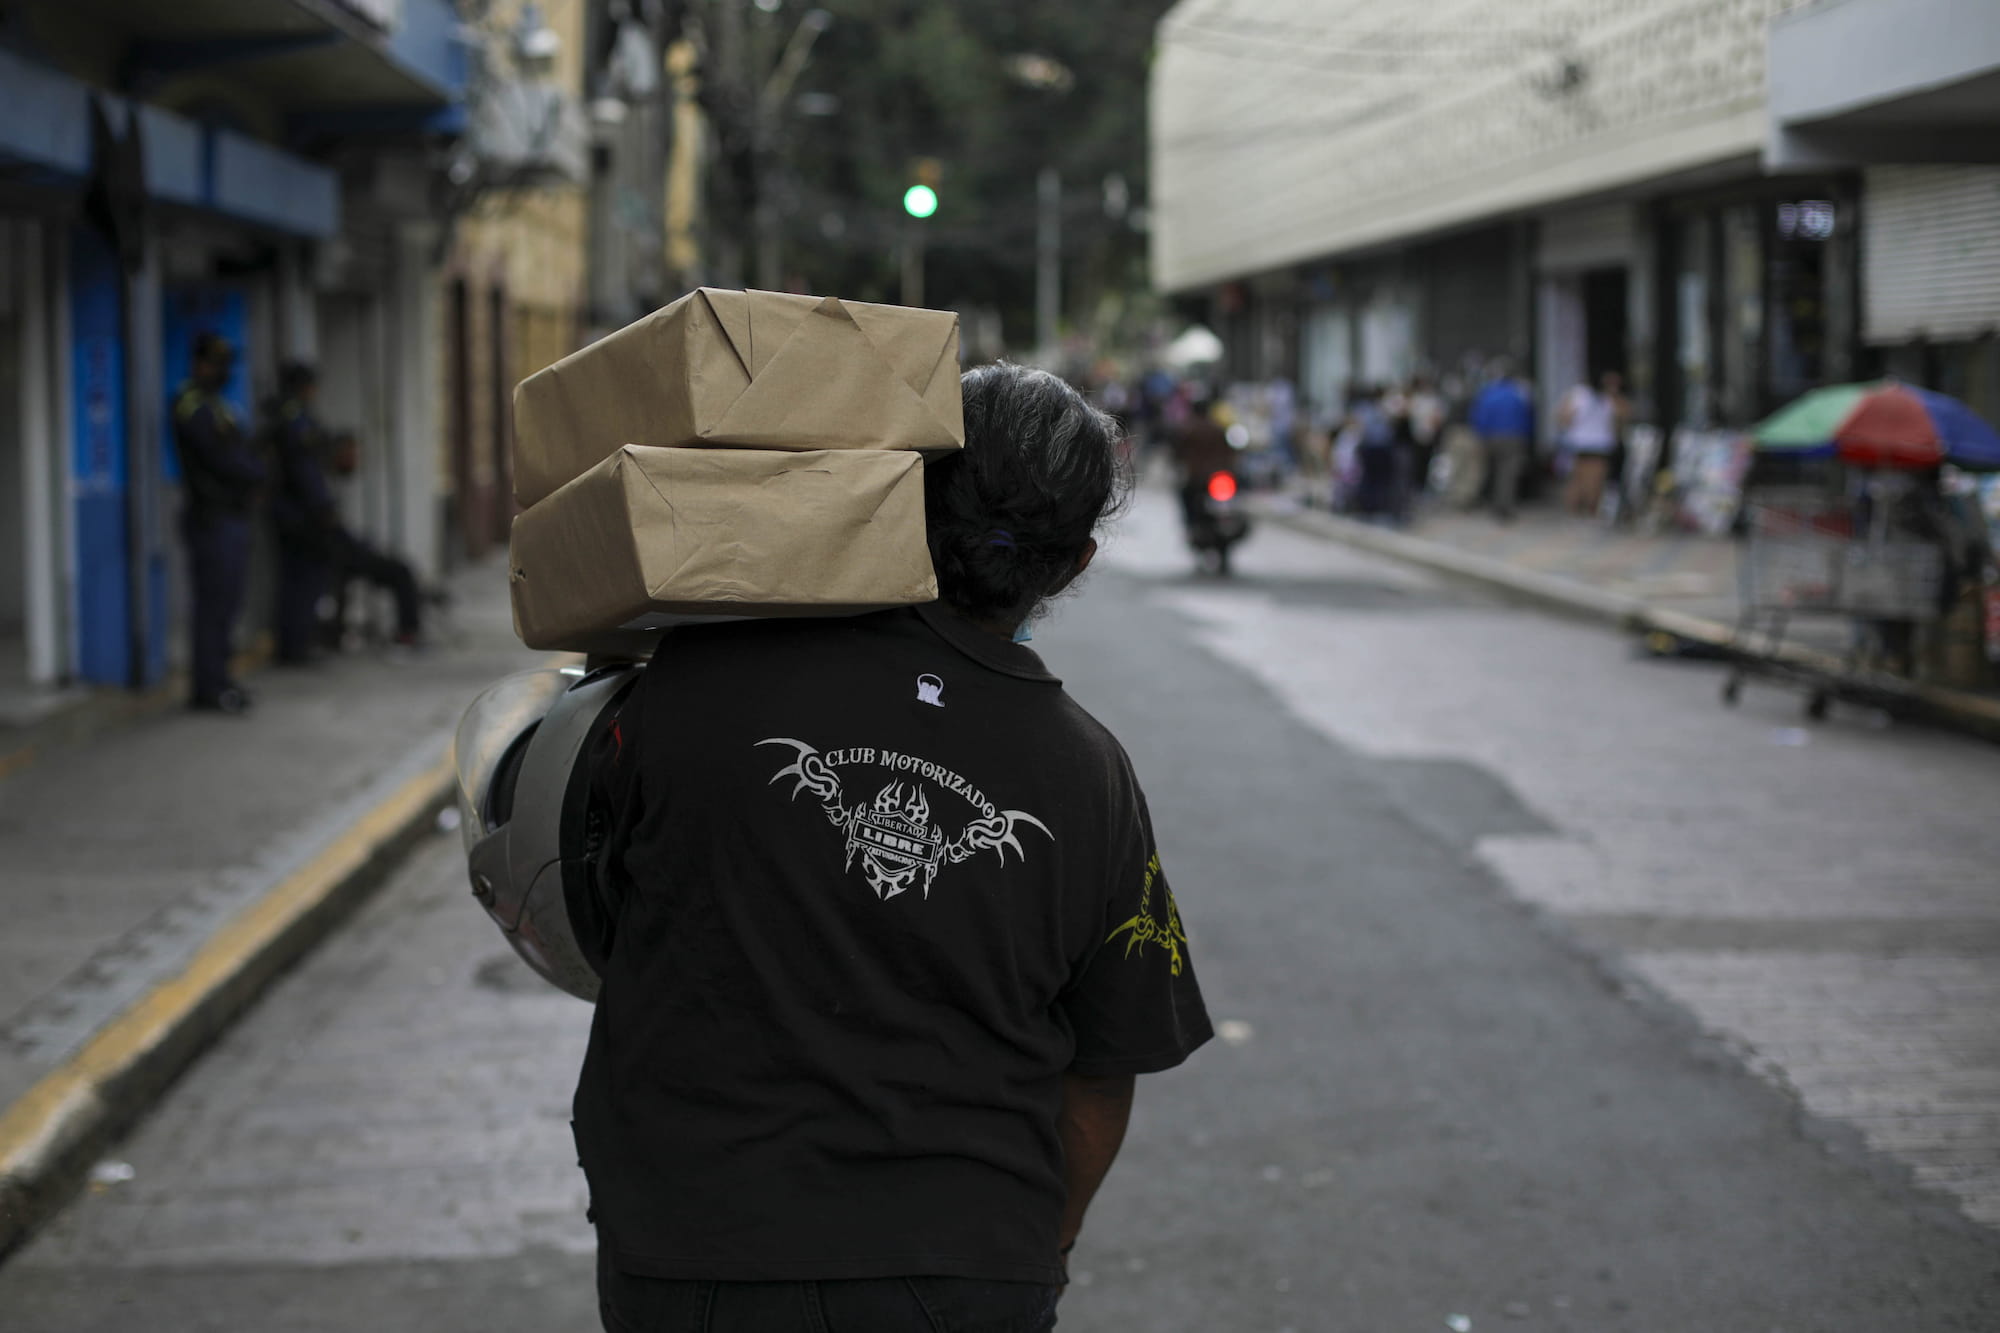 Con sus camisetas alusivas al club motorizado, los integrantes de estos grupos cargan los paquetes del periódico Poder Popular para repartirlo en el centro de Tegucigalpa, Honduras. Foto CC/ Jorge Cabrera.